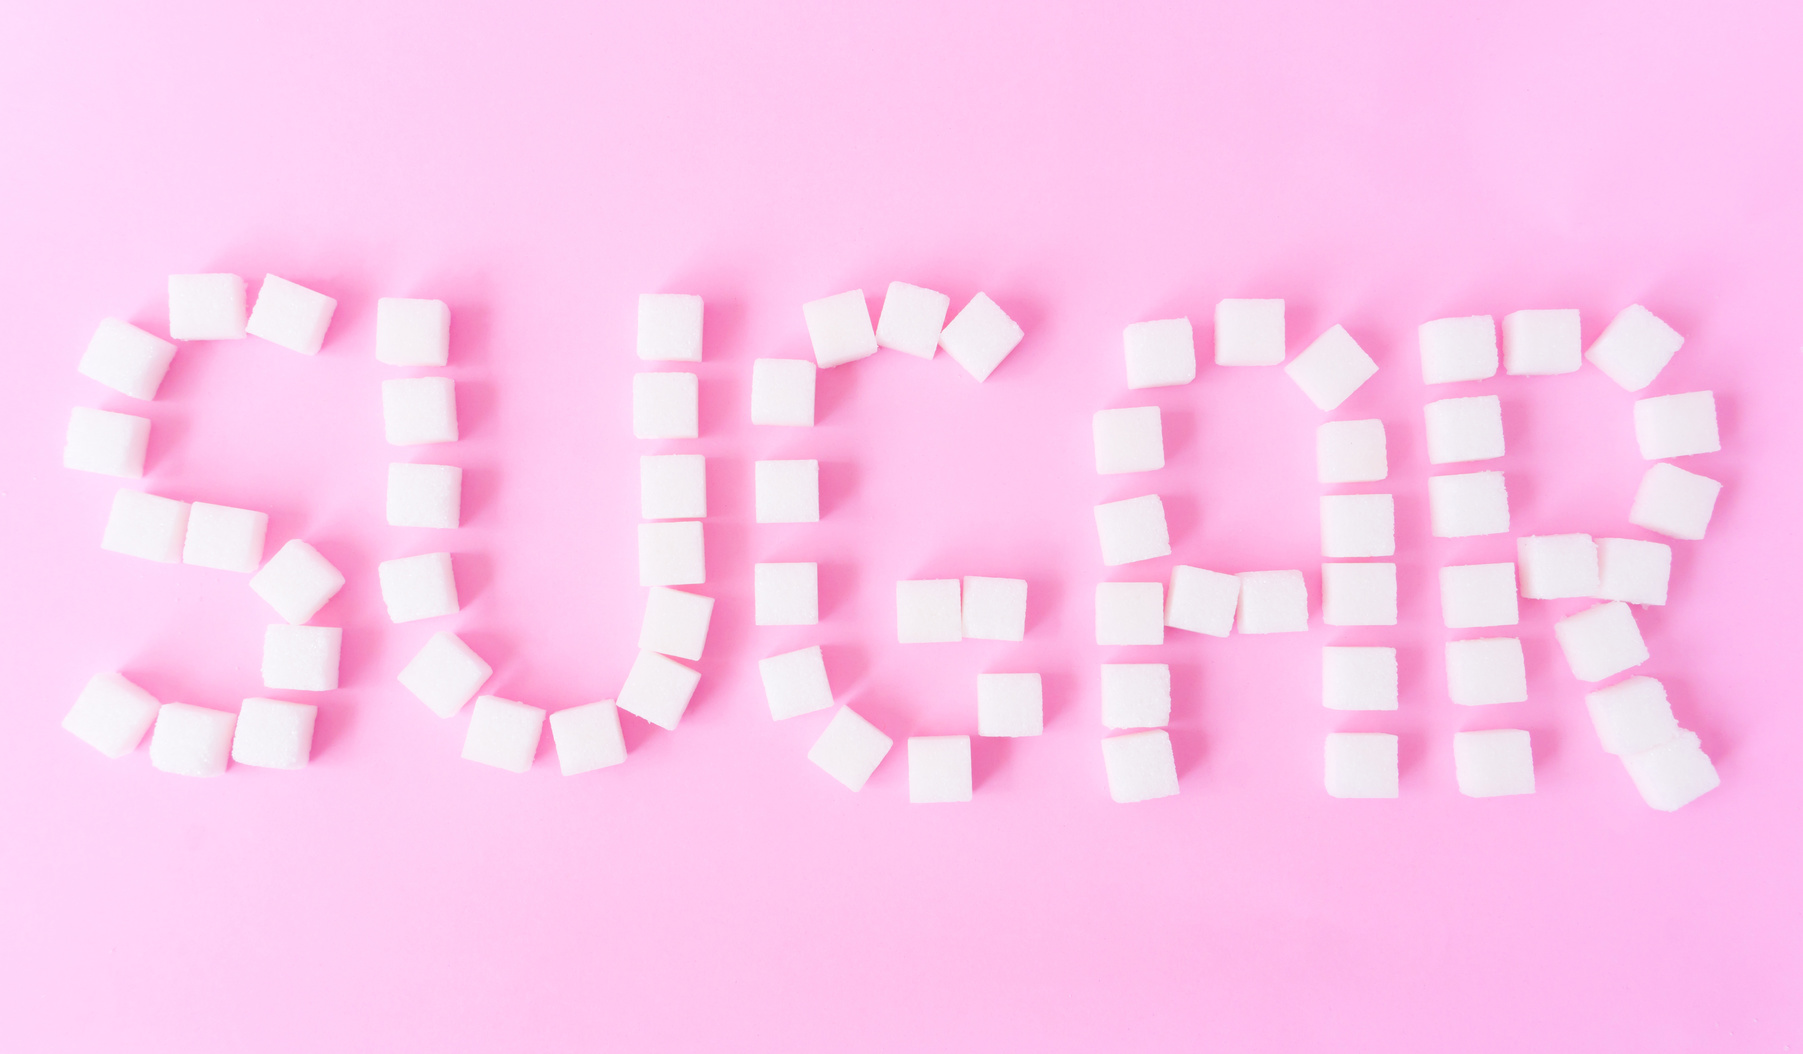 Scritta “sugar“ composta da zollette di zucchero su sfondo rosa